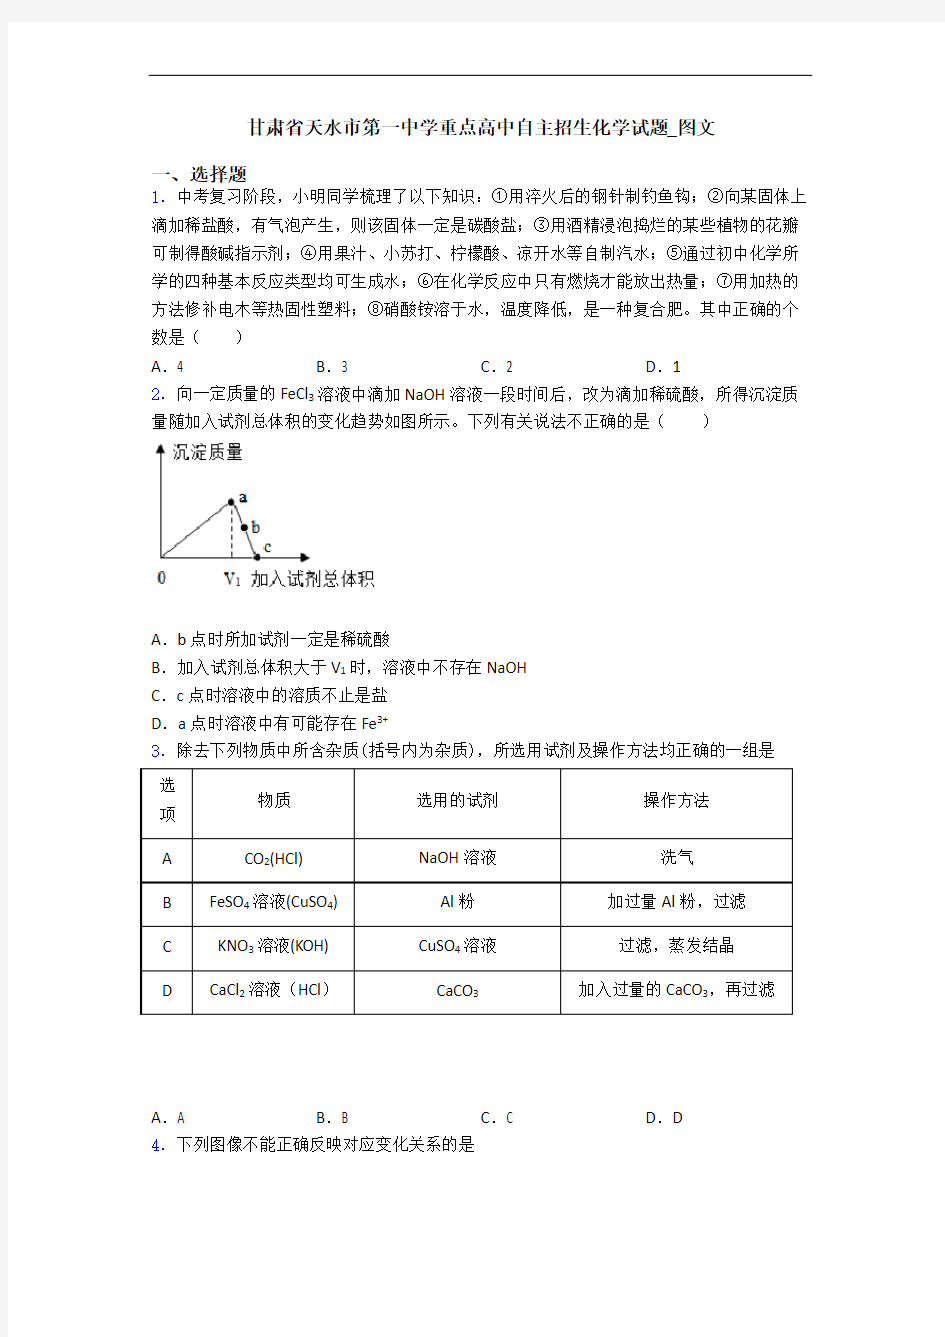 甘肃省天水市第一中学重点高中自主招生化学试题_图文